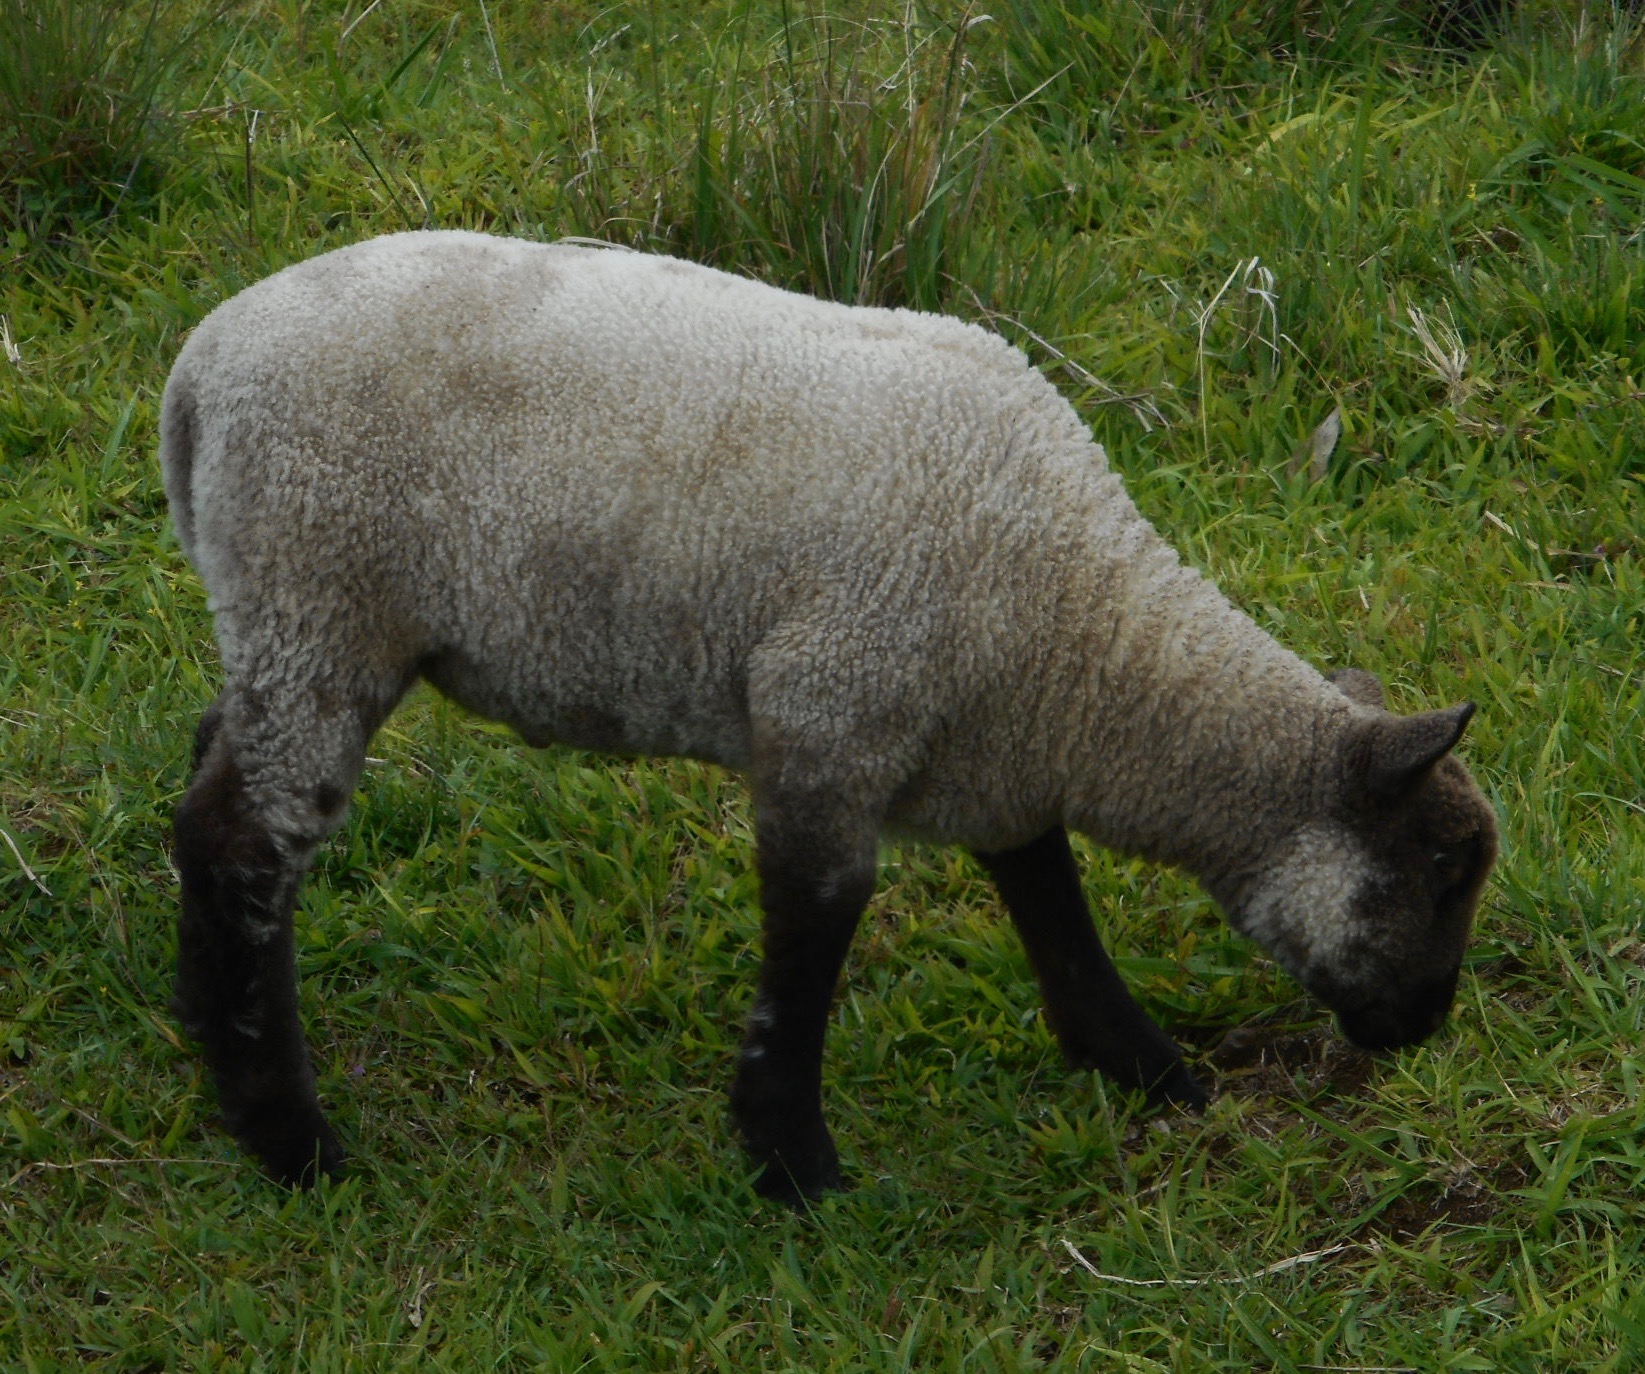 Lacy's ram lamb